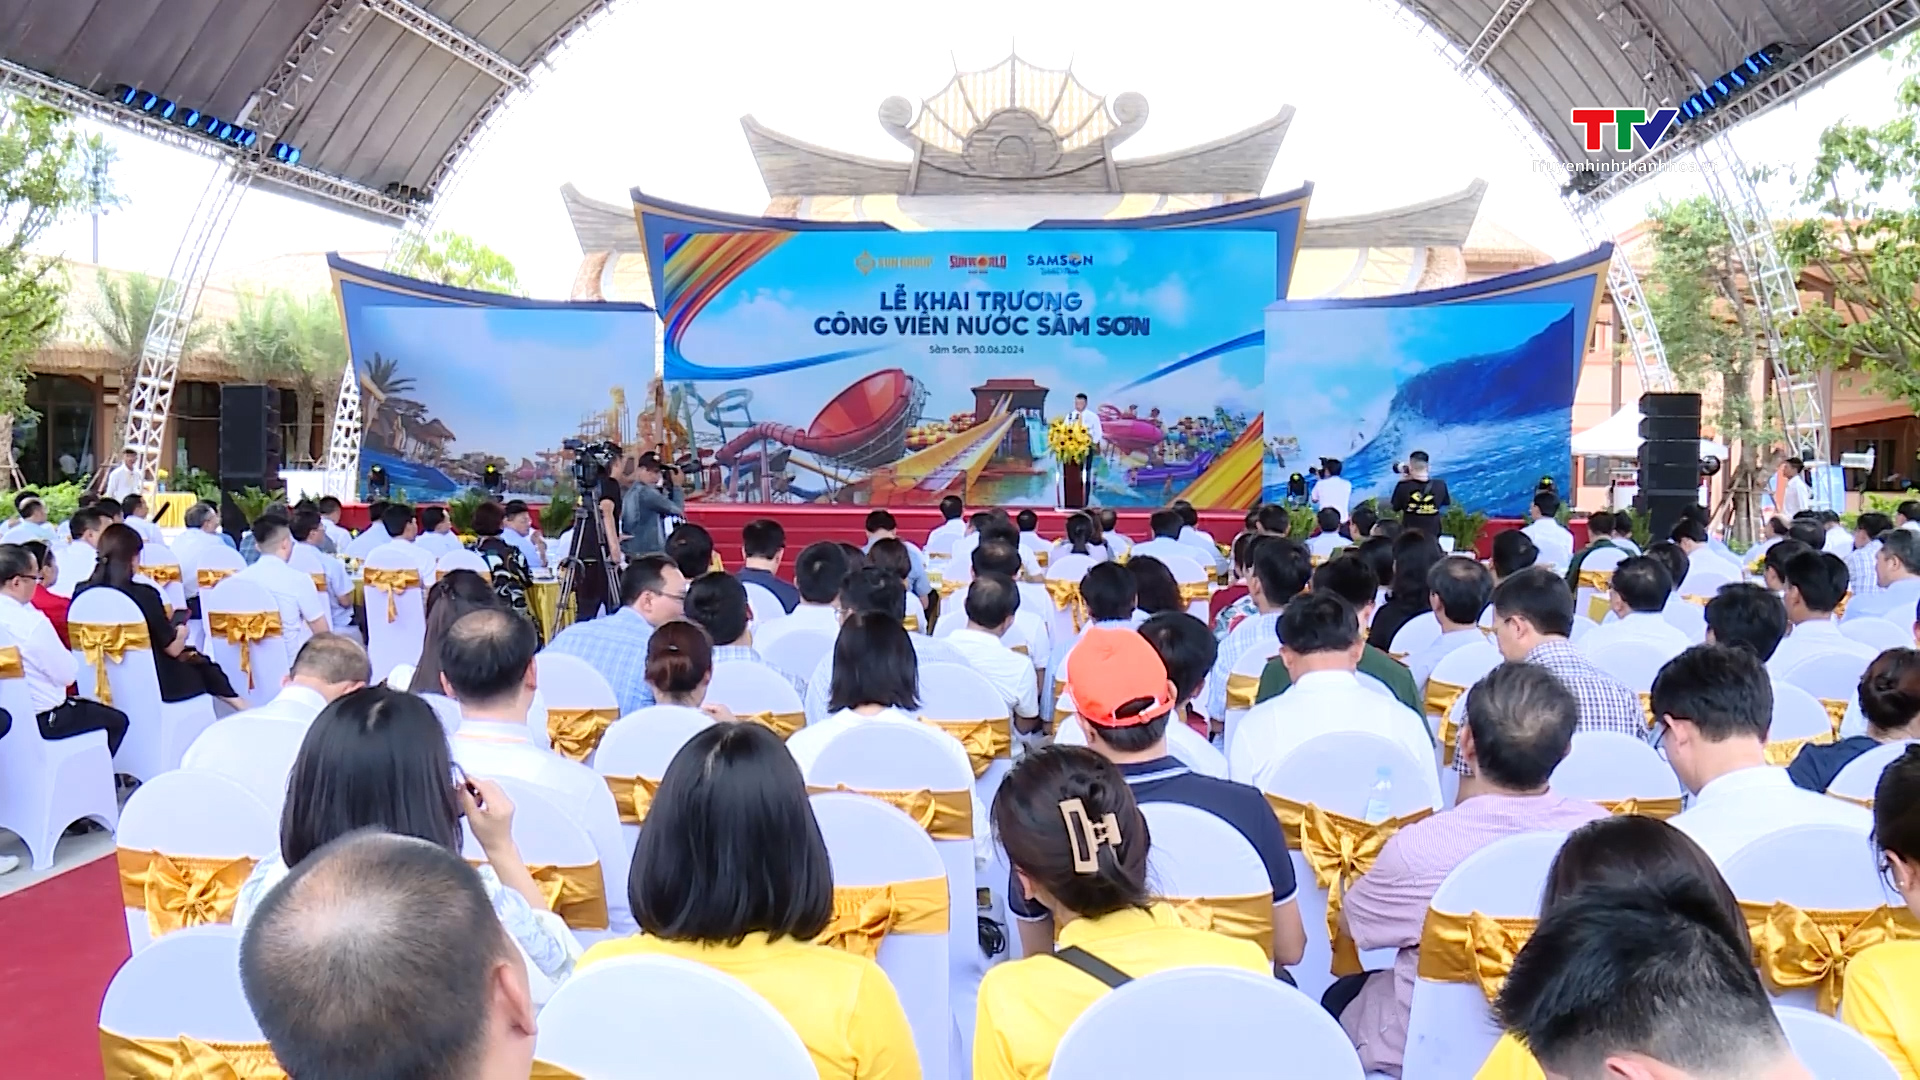 Sun group ra mắt tổ hợp vui chơi giải trí Sun World Sam Son quy mô gần 6.000 tỷ đồng tại Thanh Hoá- Ảnh 2.